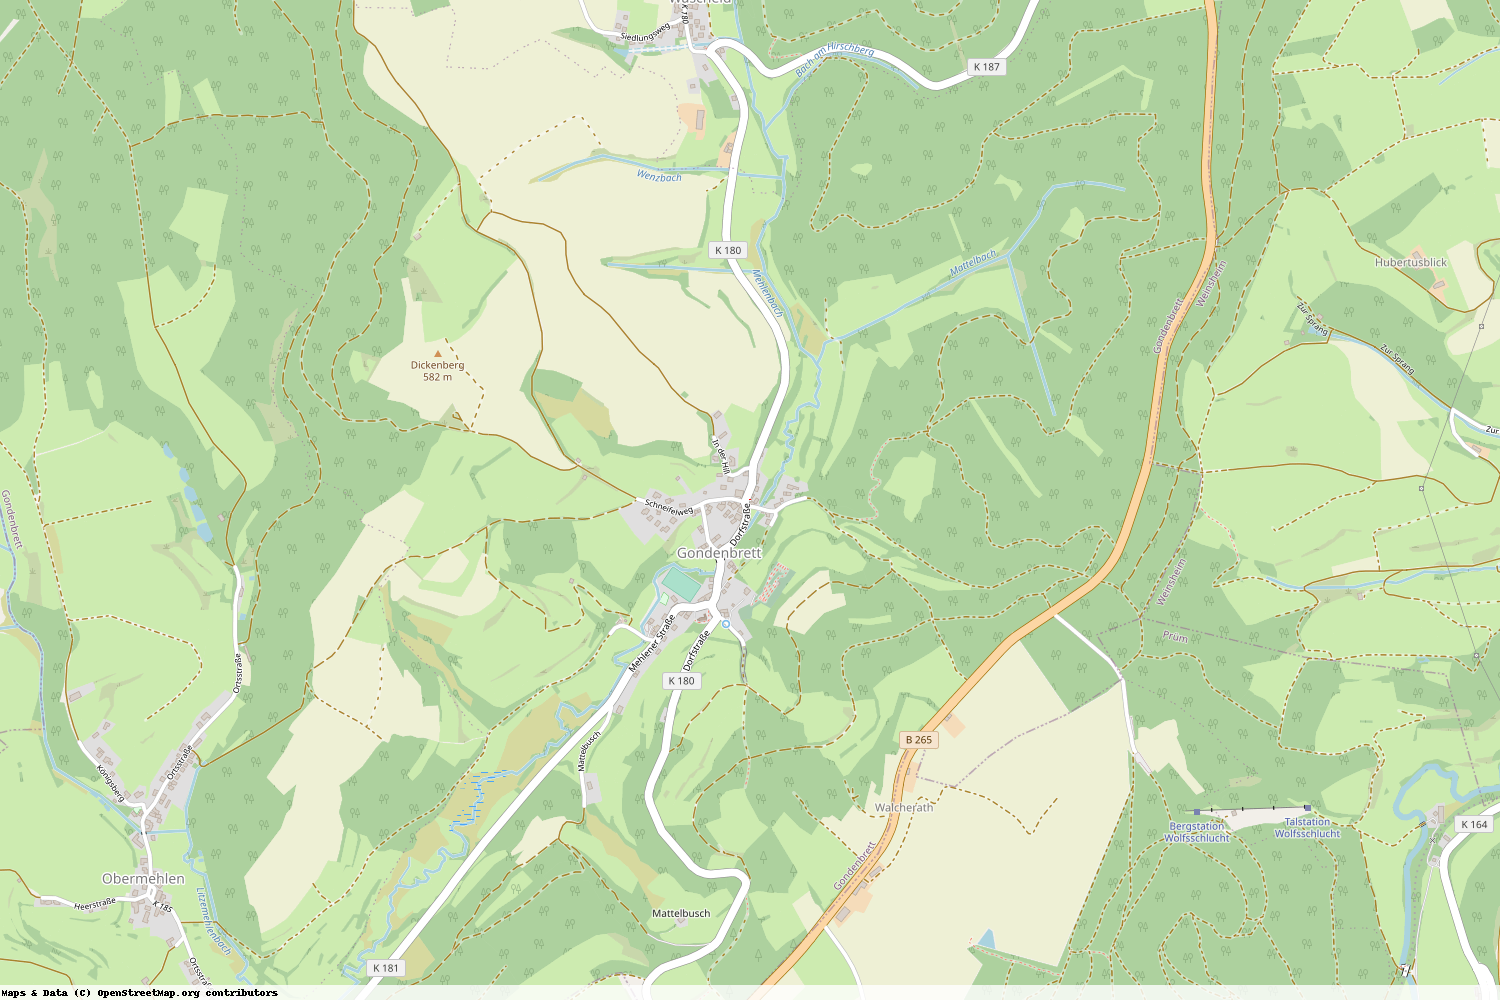 Ist gerade Stromausfall in Rheinland-Pfalz - Eifelkreis Bitburg-Prüm - Gondenbrett?